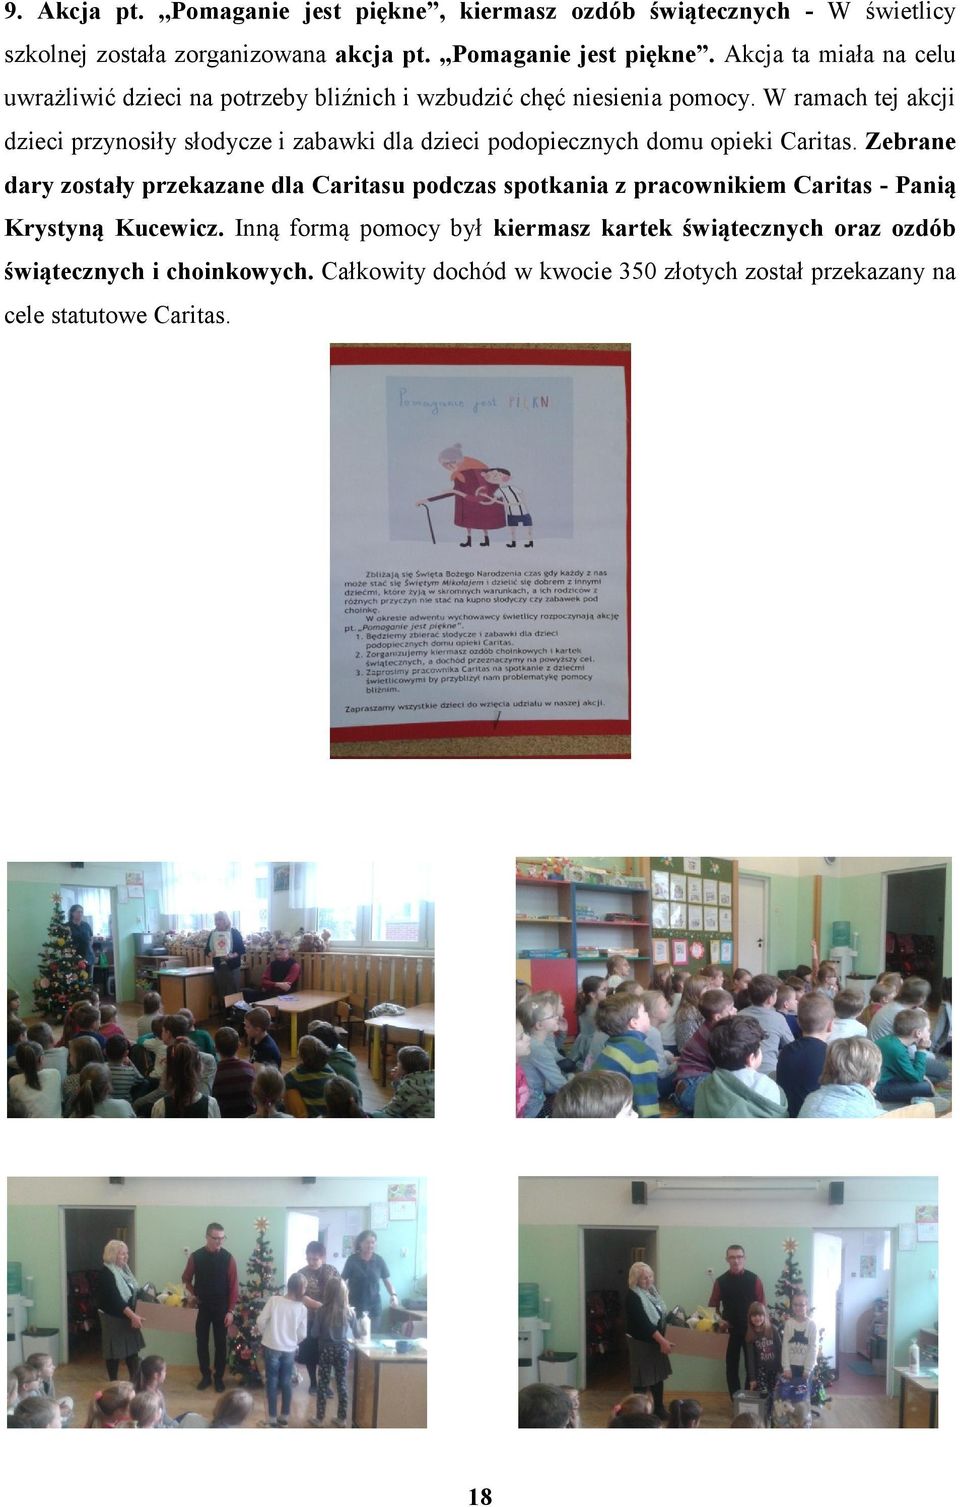 Zebrane dary zostały przekazane dla Caritasu podczas spotkania z pracownikiem Caritas - Panią Krystyną Kucewicz.